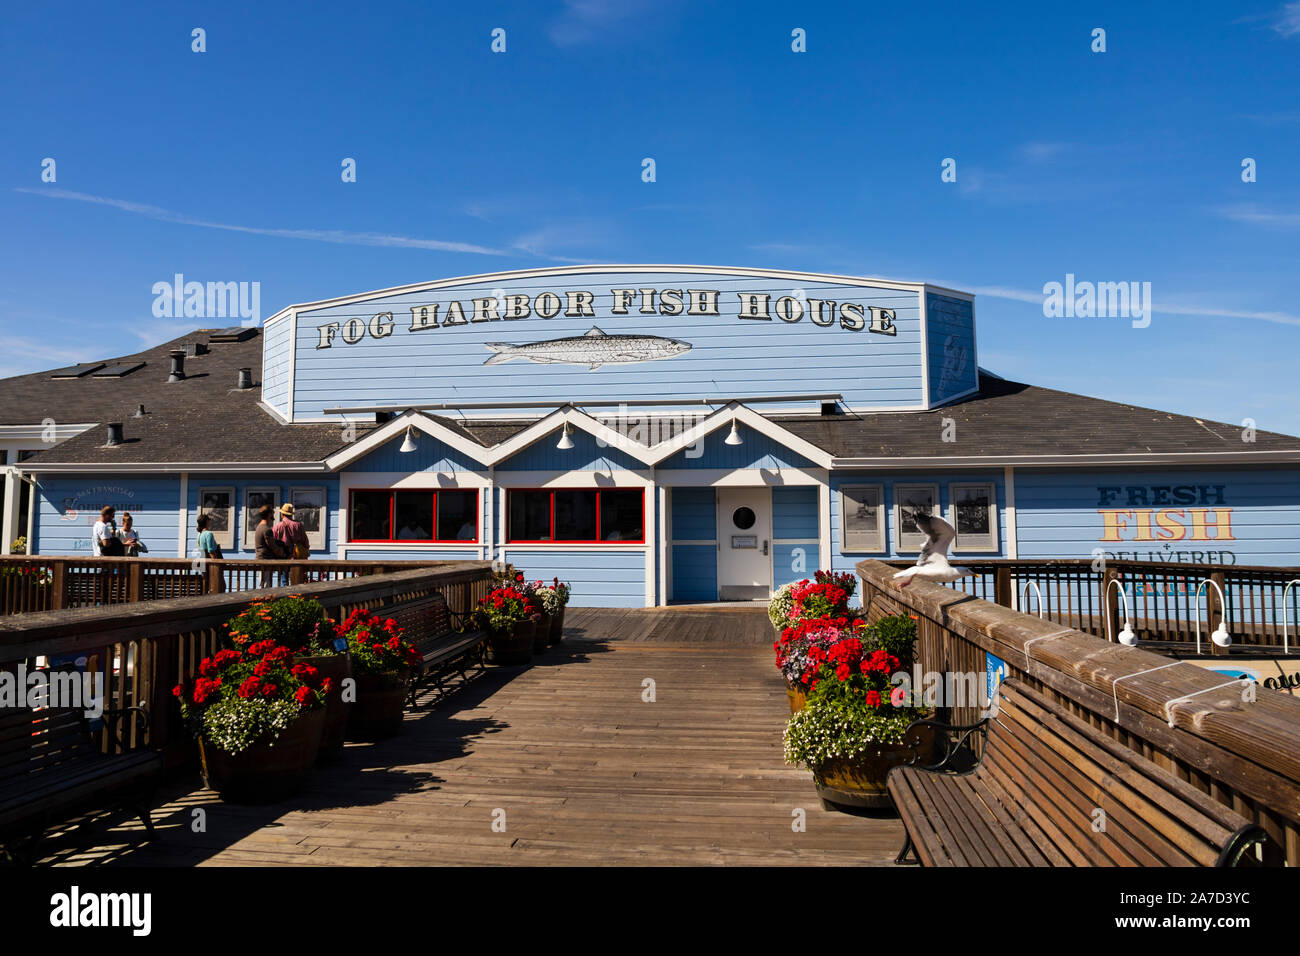 Nebbia pesce Harbour House Restaurant, attrazioni su Pier 39, Fishermans Wharf di San Francisco, in California, Stati Uniti d'America Foto Stock